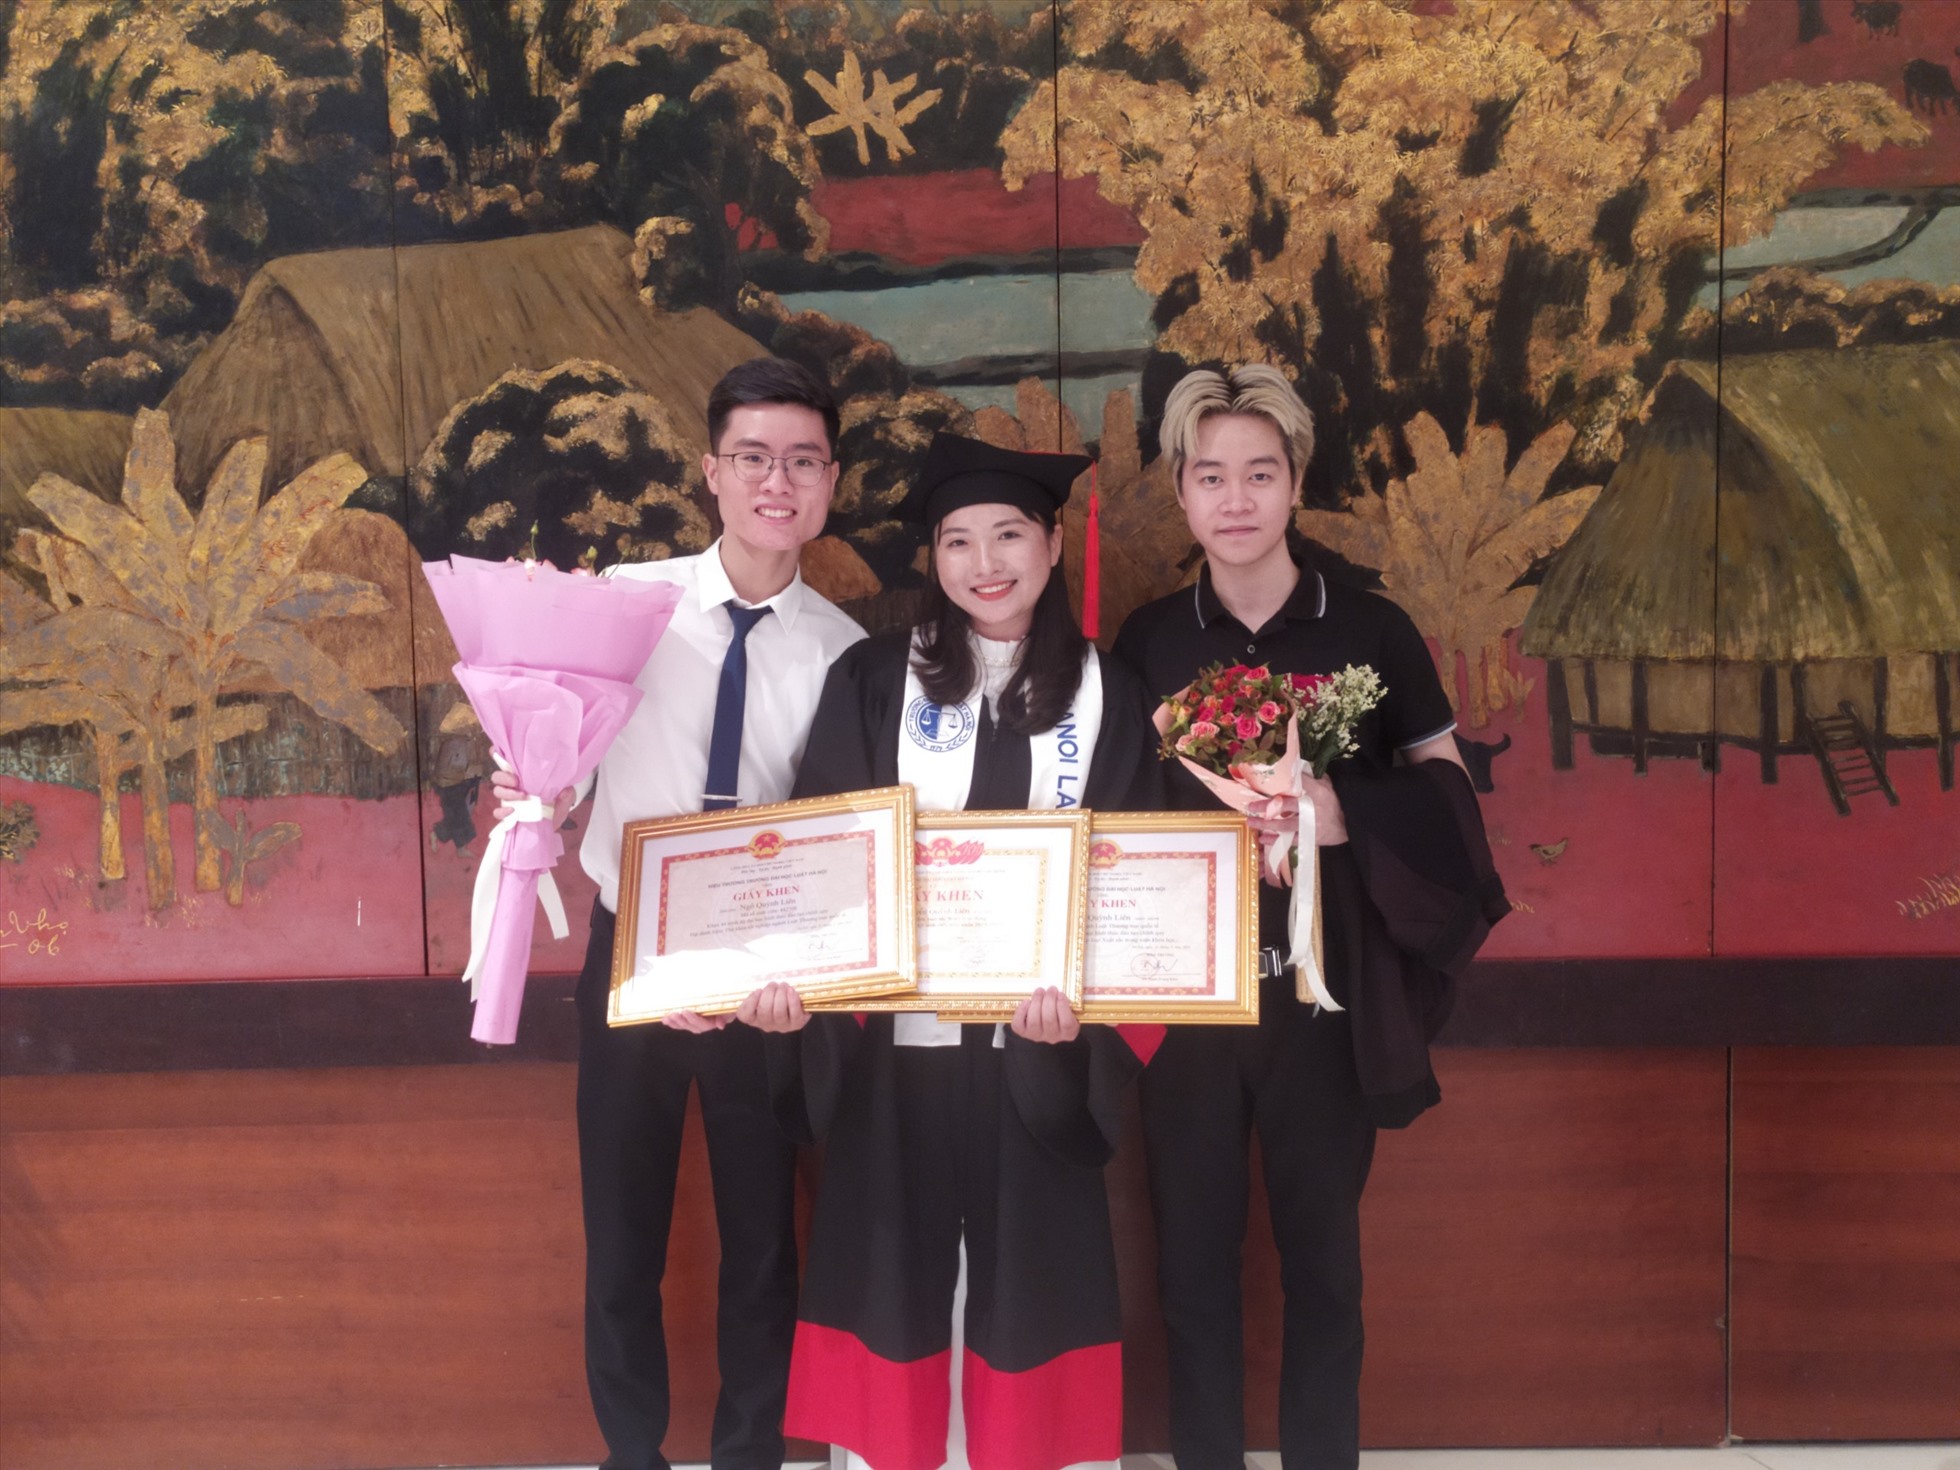 Quỳnh Liên nhận chụp ảnh lưu niệm cùng bạn bè tại lễ tốt nghiệp ngày 25.6. Ảnh: Nhân vật cung cấp